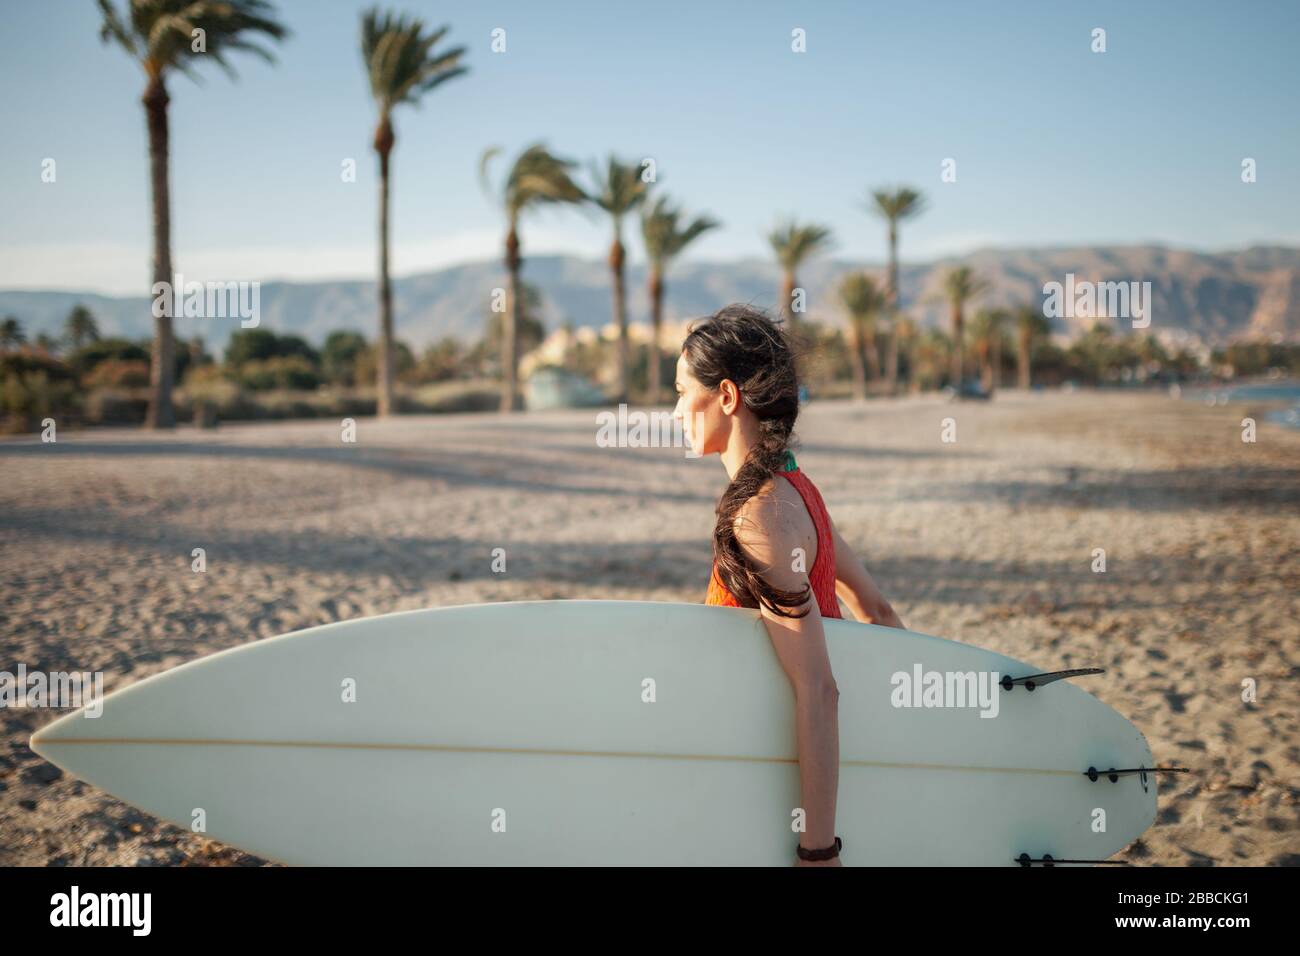 Jeune femme marchant à travers la plage avec son planche de surf Banque D'Images